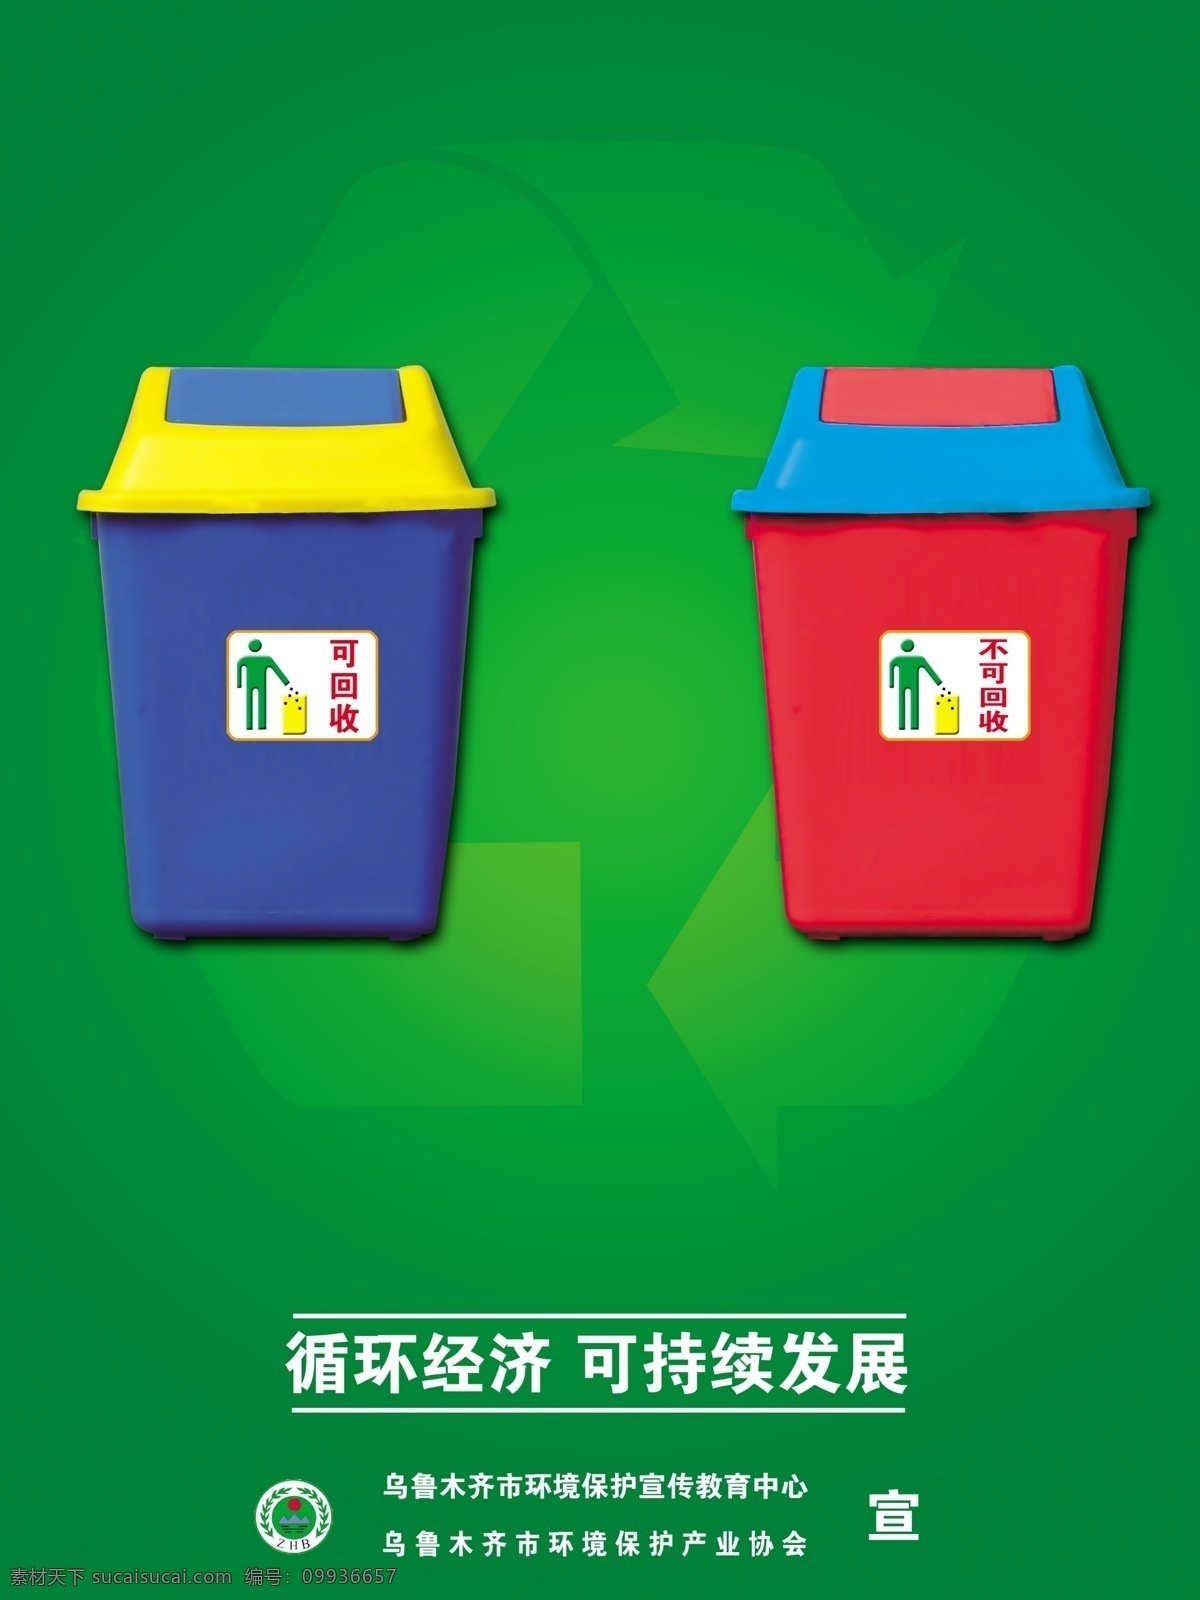 公益广告 垃圾 垃圾箱 保护环境 再利用 循环 绿色 可回收 不可回收 循环经济 可持续发展 dm宣传单 广告设计模板 源文件